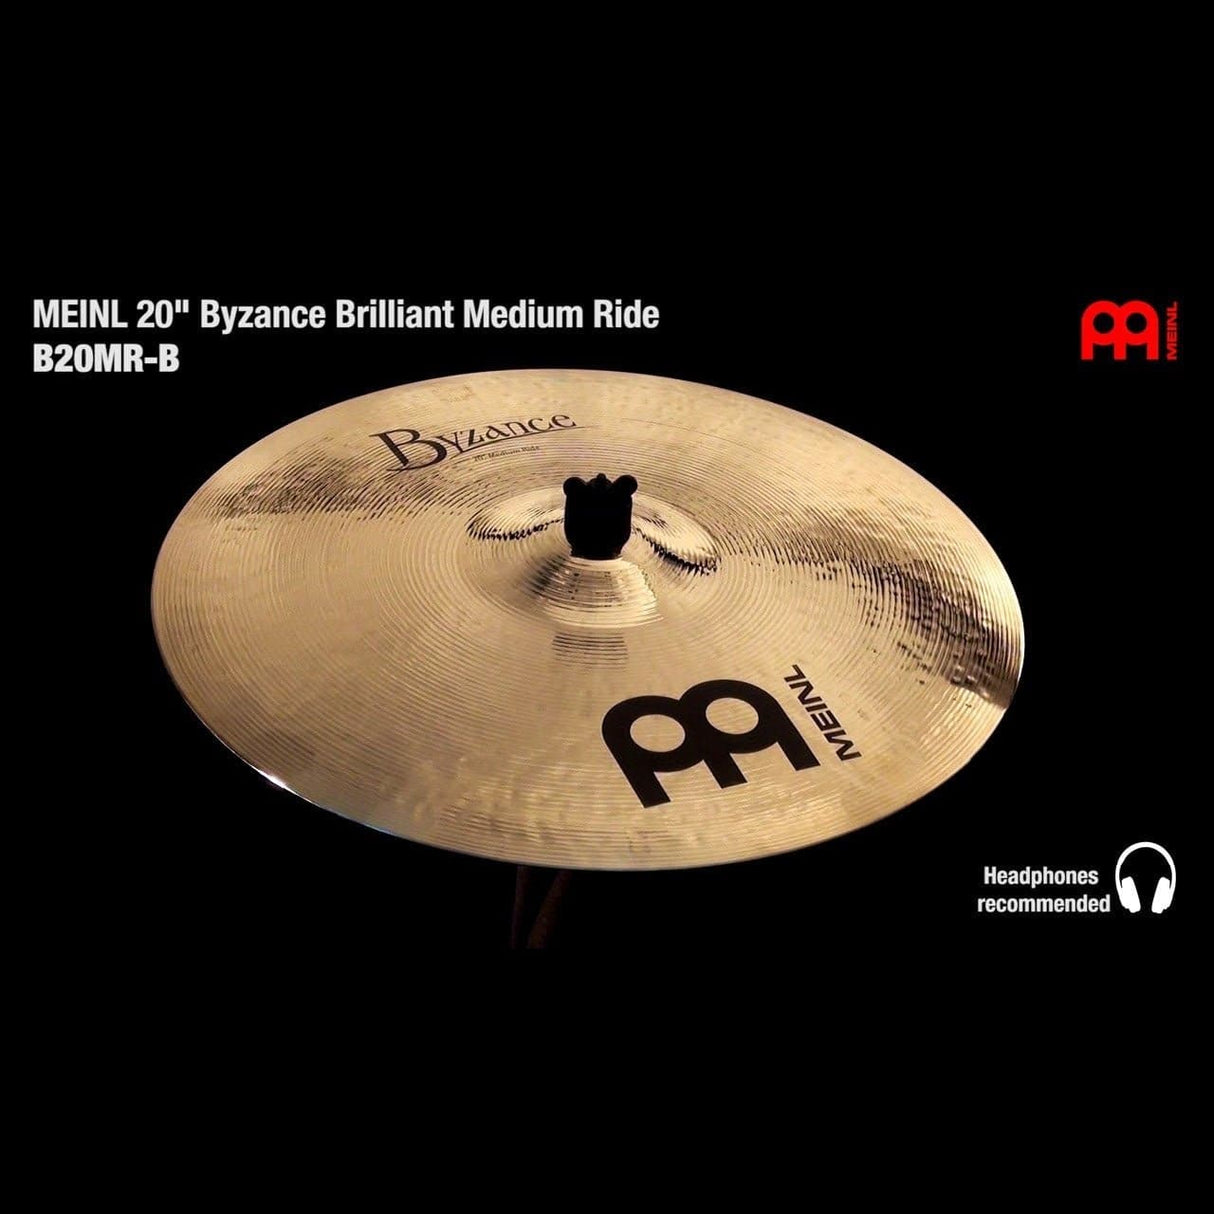 Meinl Byzance Brilliant Medium Ride Cymbal 20